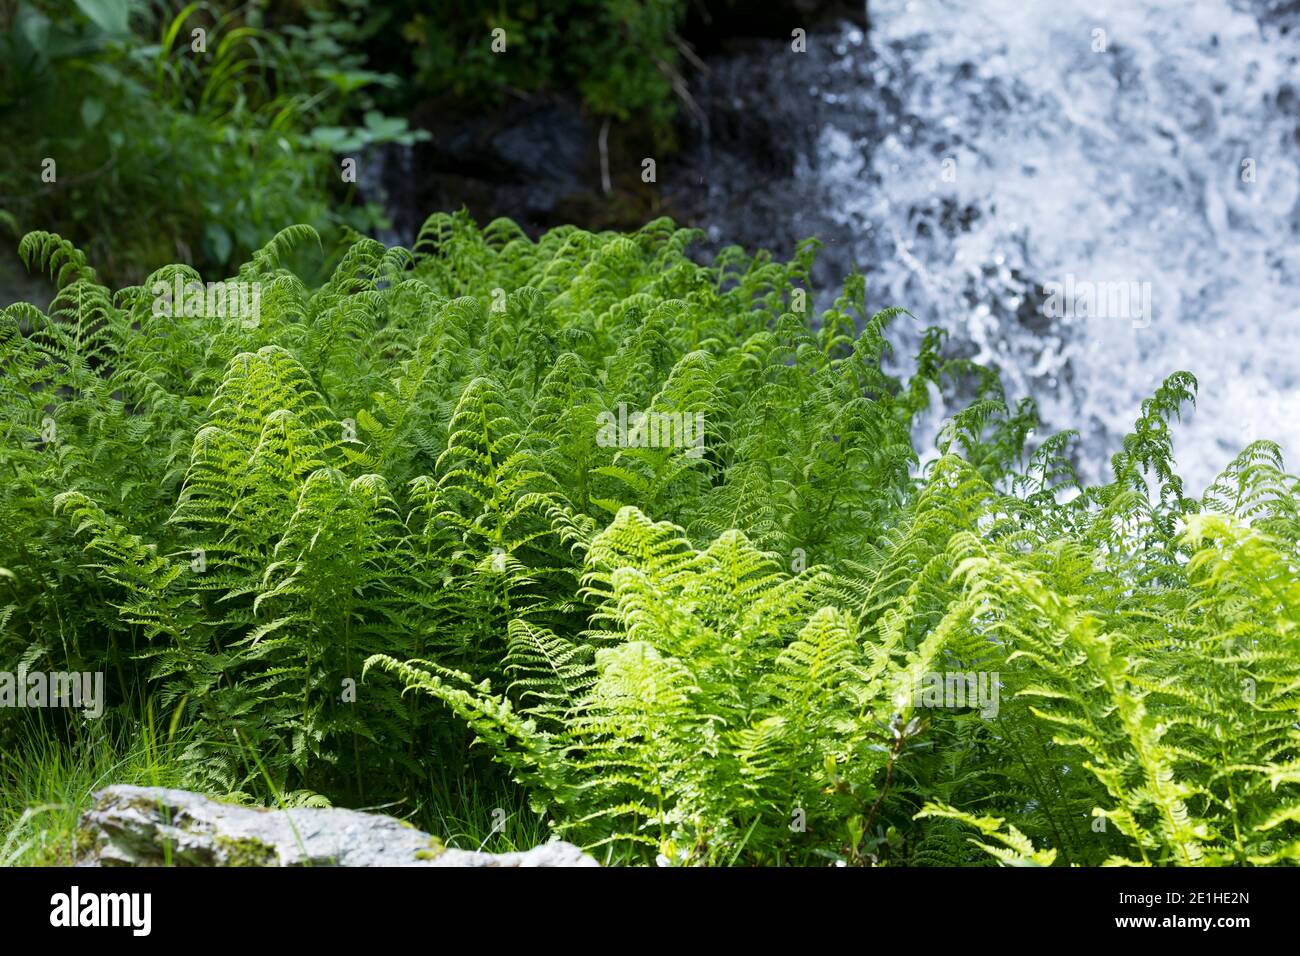 Gebirgs-Frauenfarn, Alpen-Waldfarn, Athyrium distentifolium, Athyrium alpestre, alpine lady-fern, Alpine Lady Fern, L'Athyrium des Alpes, Österreich, Stock Photo